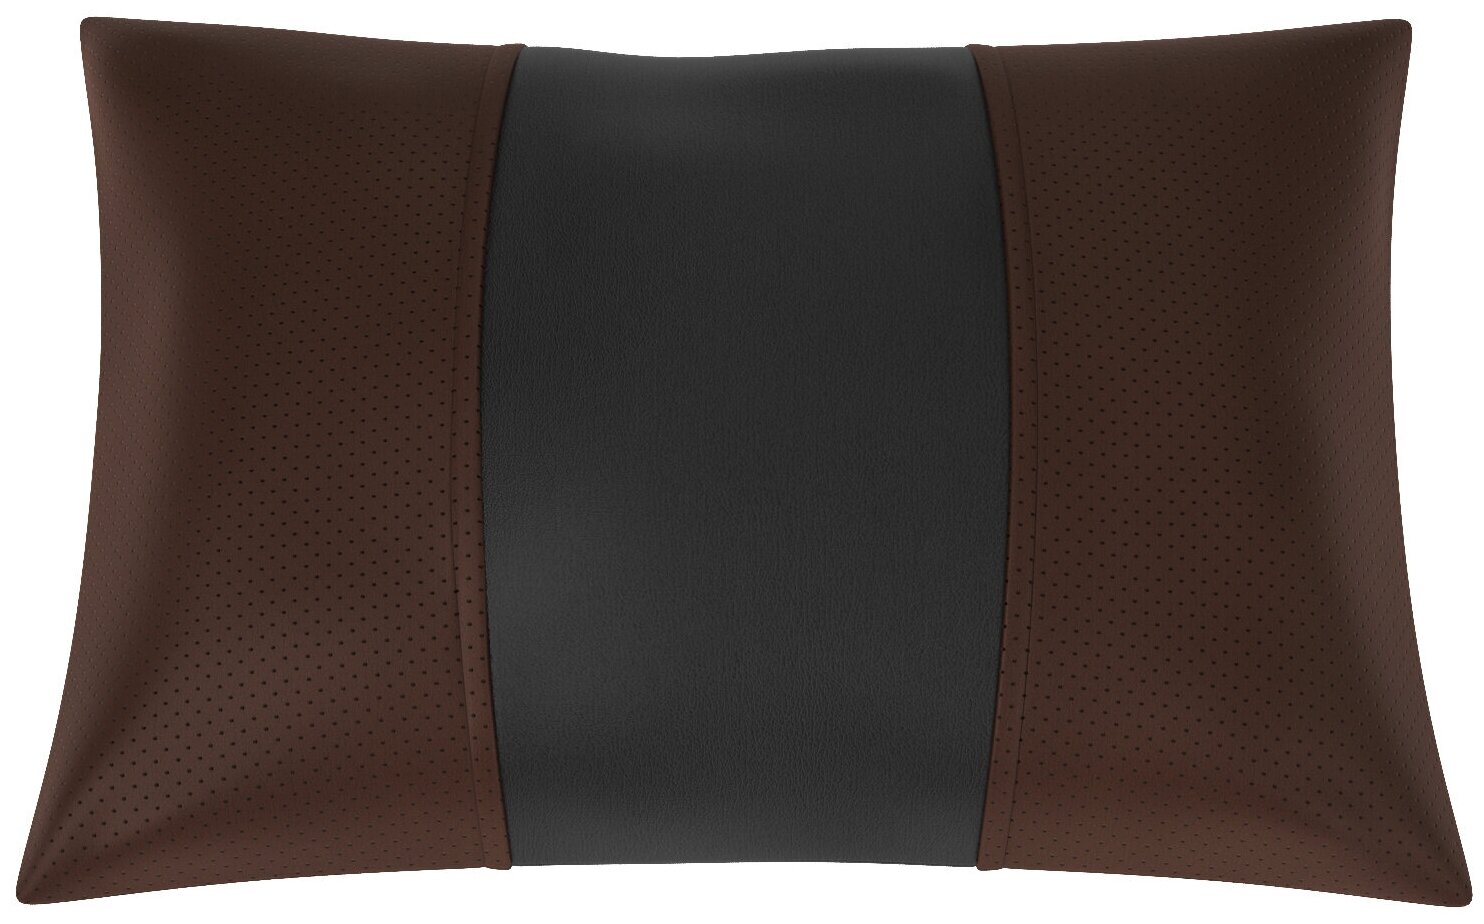 Автомобильная подушка для Nissan Juke (Ниссан Жук). Экокожа. Середина: чёрная гладкая экокожа. Боковины: шоколад экокожа с перфорацией. 1 шт.